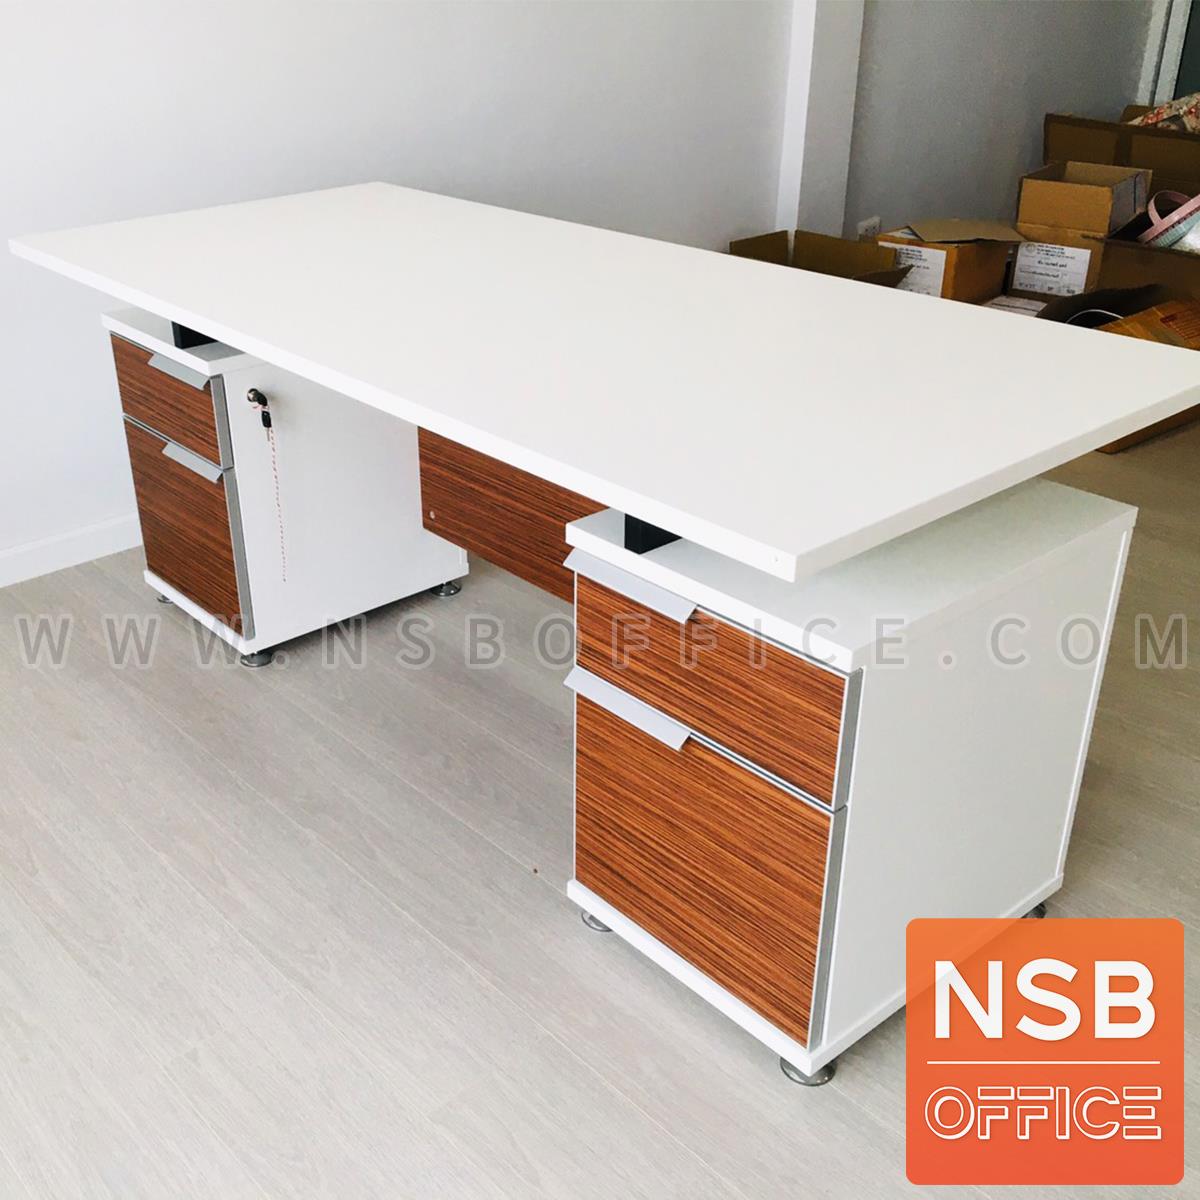 โต๊ะทำงาน 4 ลิ้นชัก  รุ่น Flabix (แฟล์บิกซ์) ขนาด 180W cm.  สีซีบราโน่-ขาว